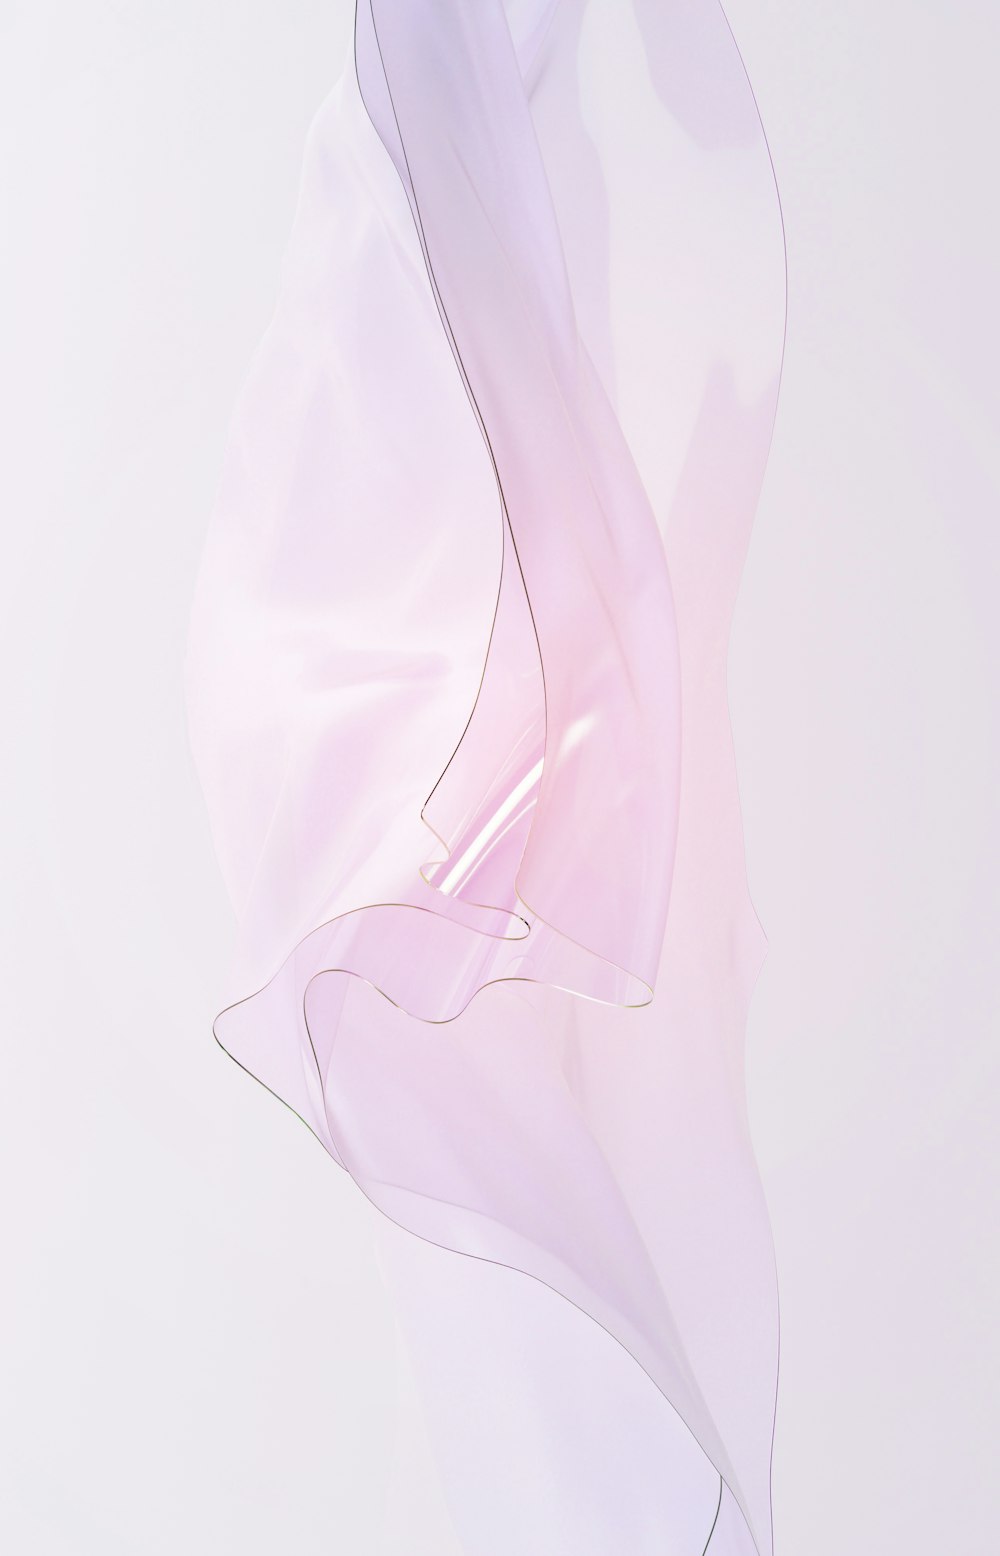 Eine abstrakte Fotografie eines weißen Stoffes